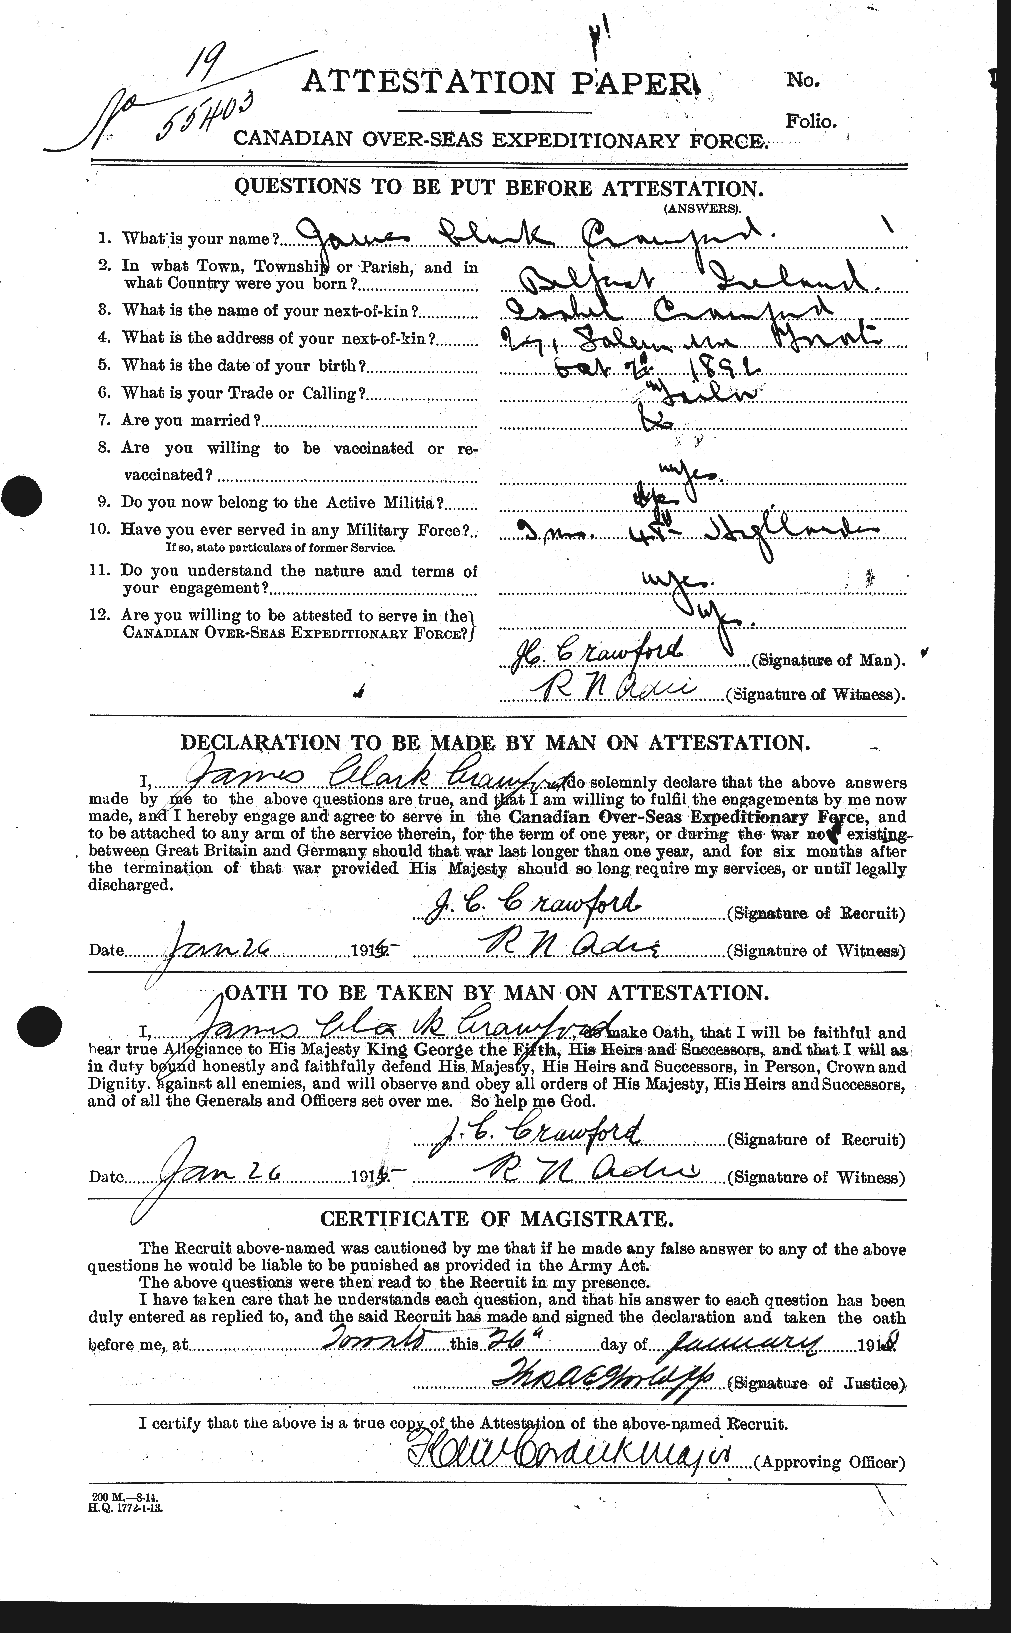 Dossiers du Personnel de la Première Guerre mondiale - CEC 062757a